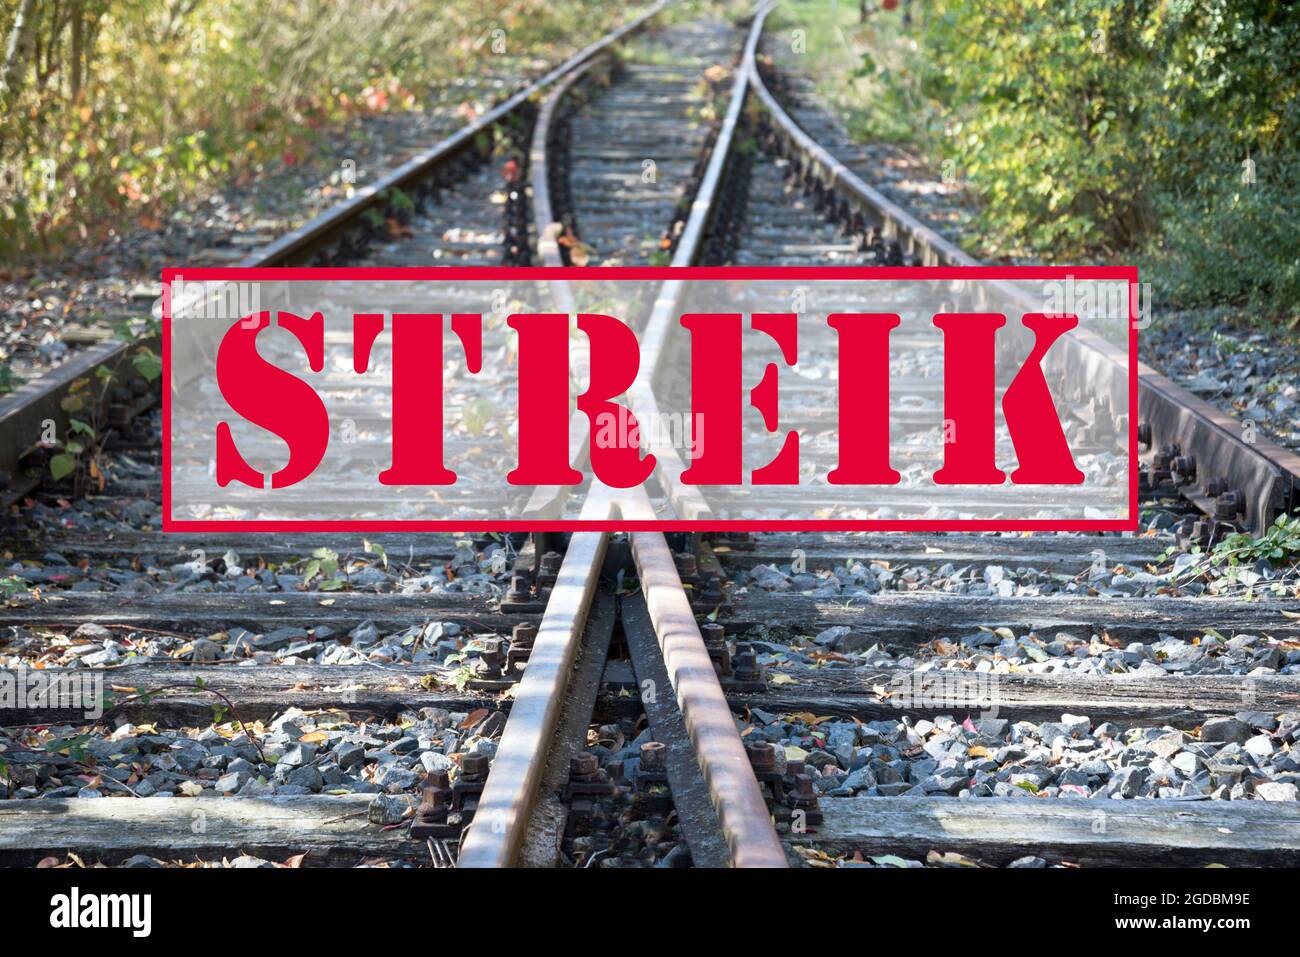 Bannière de texte allemande Streik (signifiant grève) sur les anciennes voies ferrées, sélection Banque D'Images